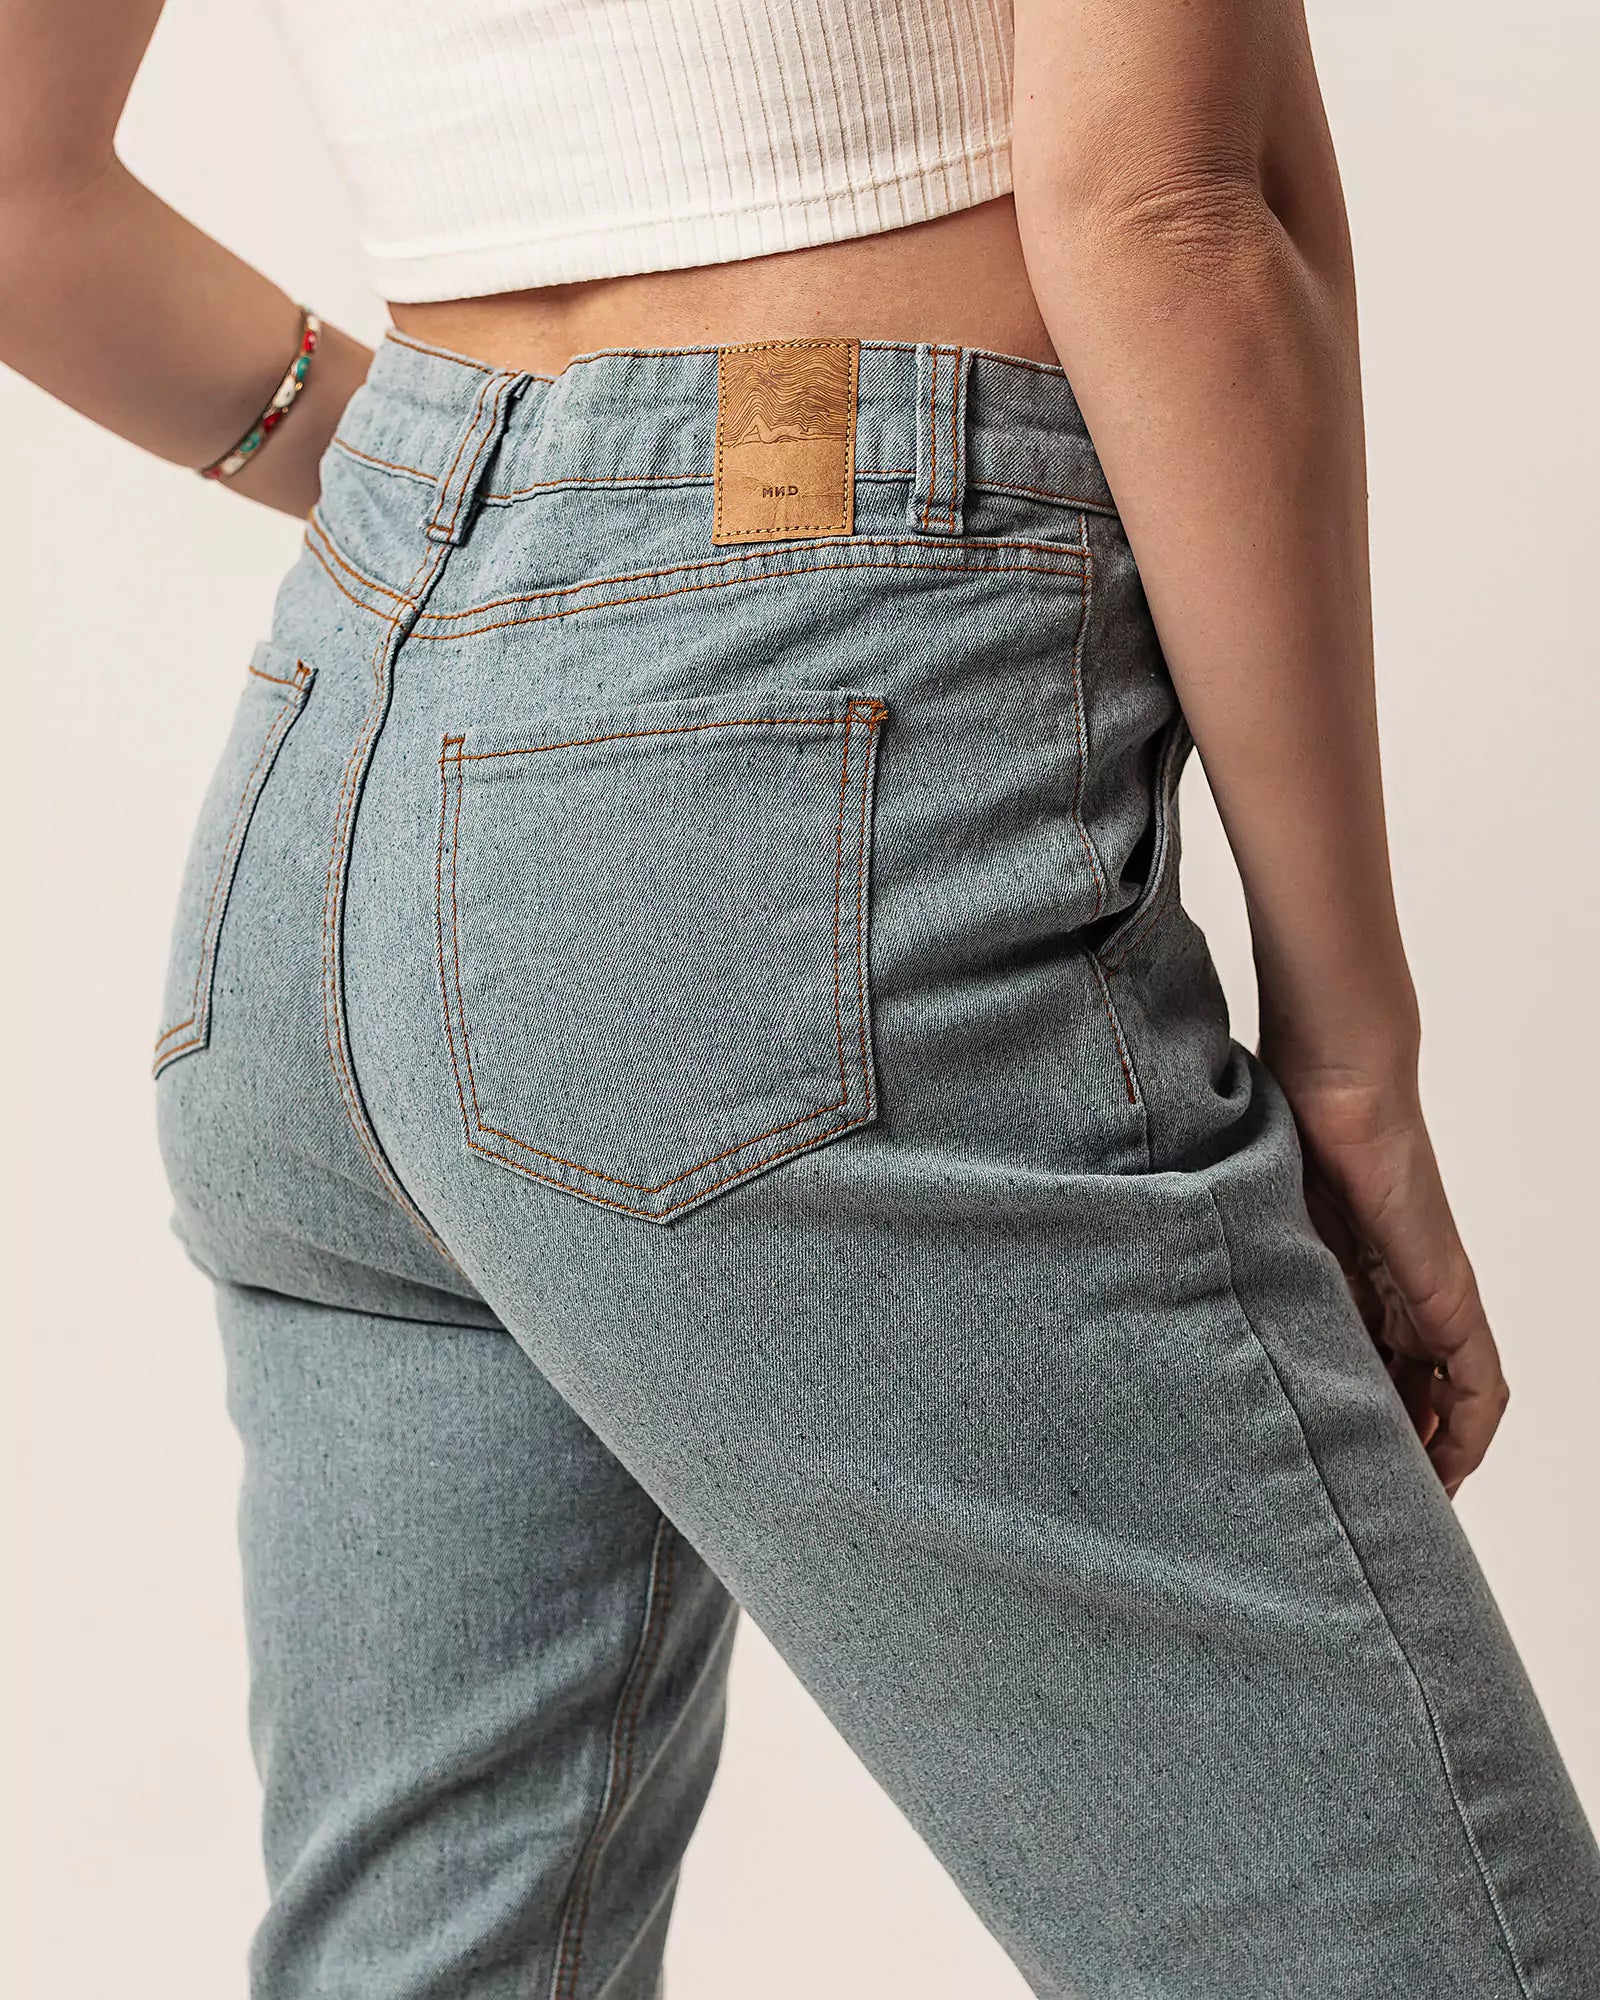 Calça Jogger Jeans Azul Claro Eco Denim™. Compre online moda sustentável e atemporal na Minimadeia. Roupas femininas estilosas, básicas e sustentáveis. Foto produto 02